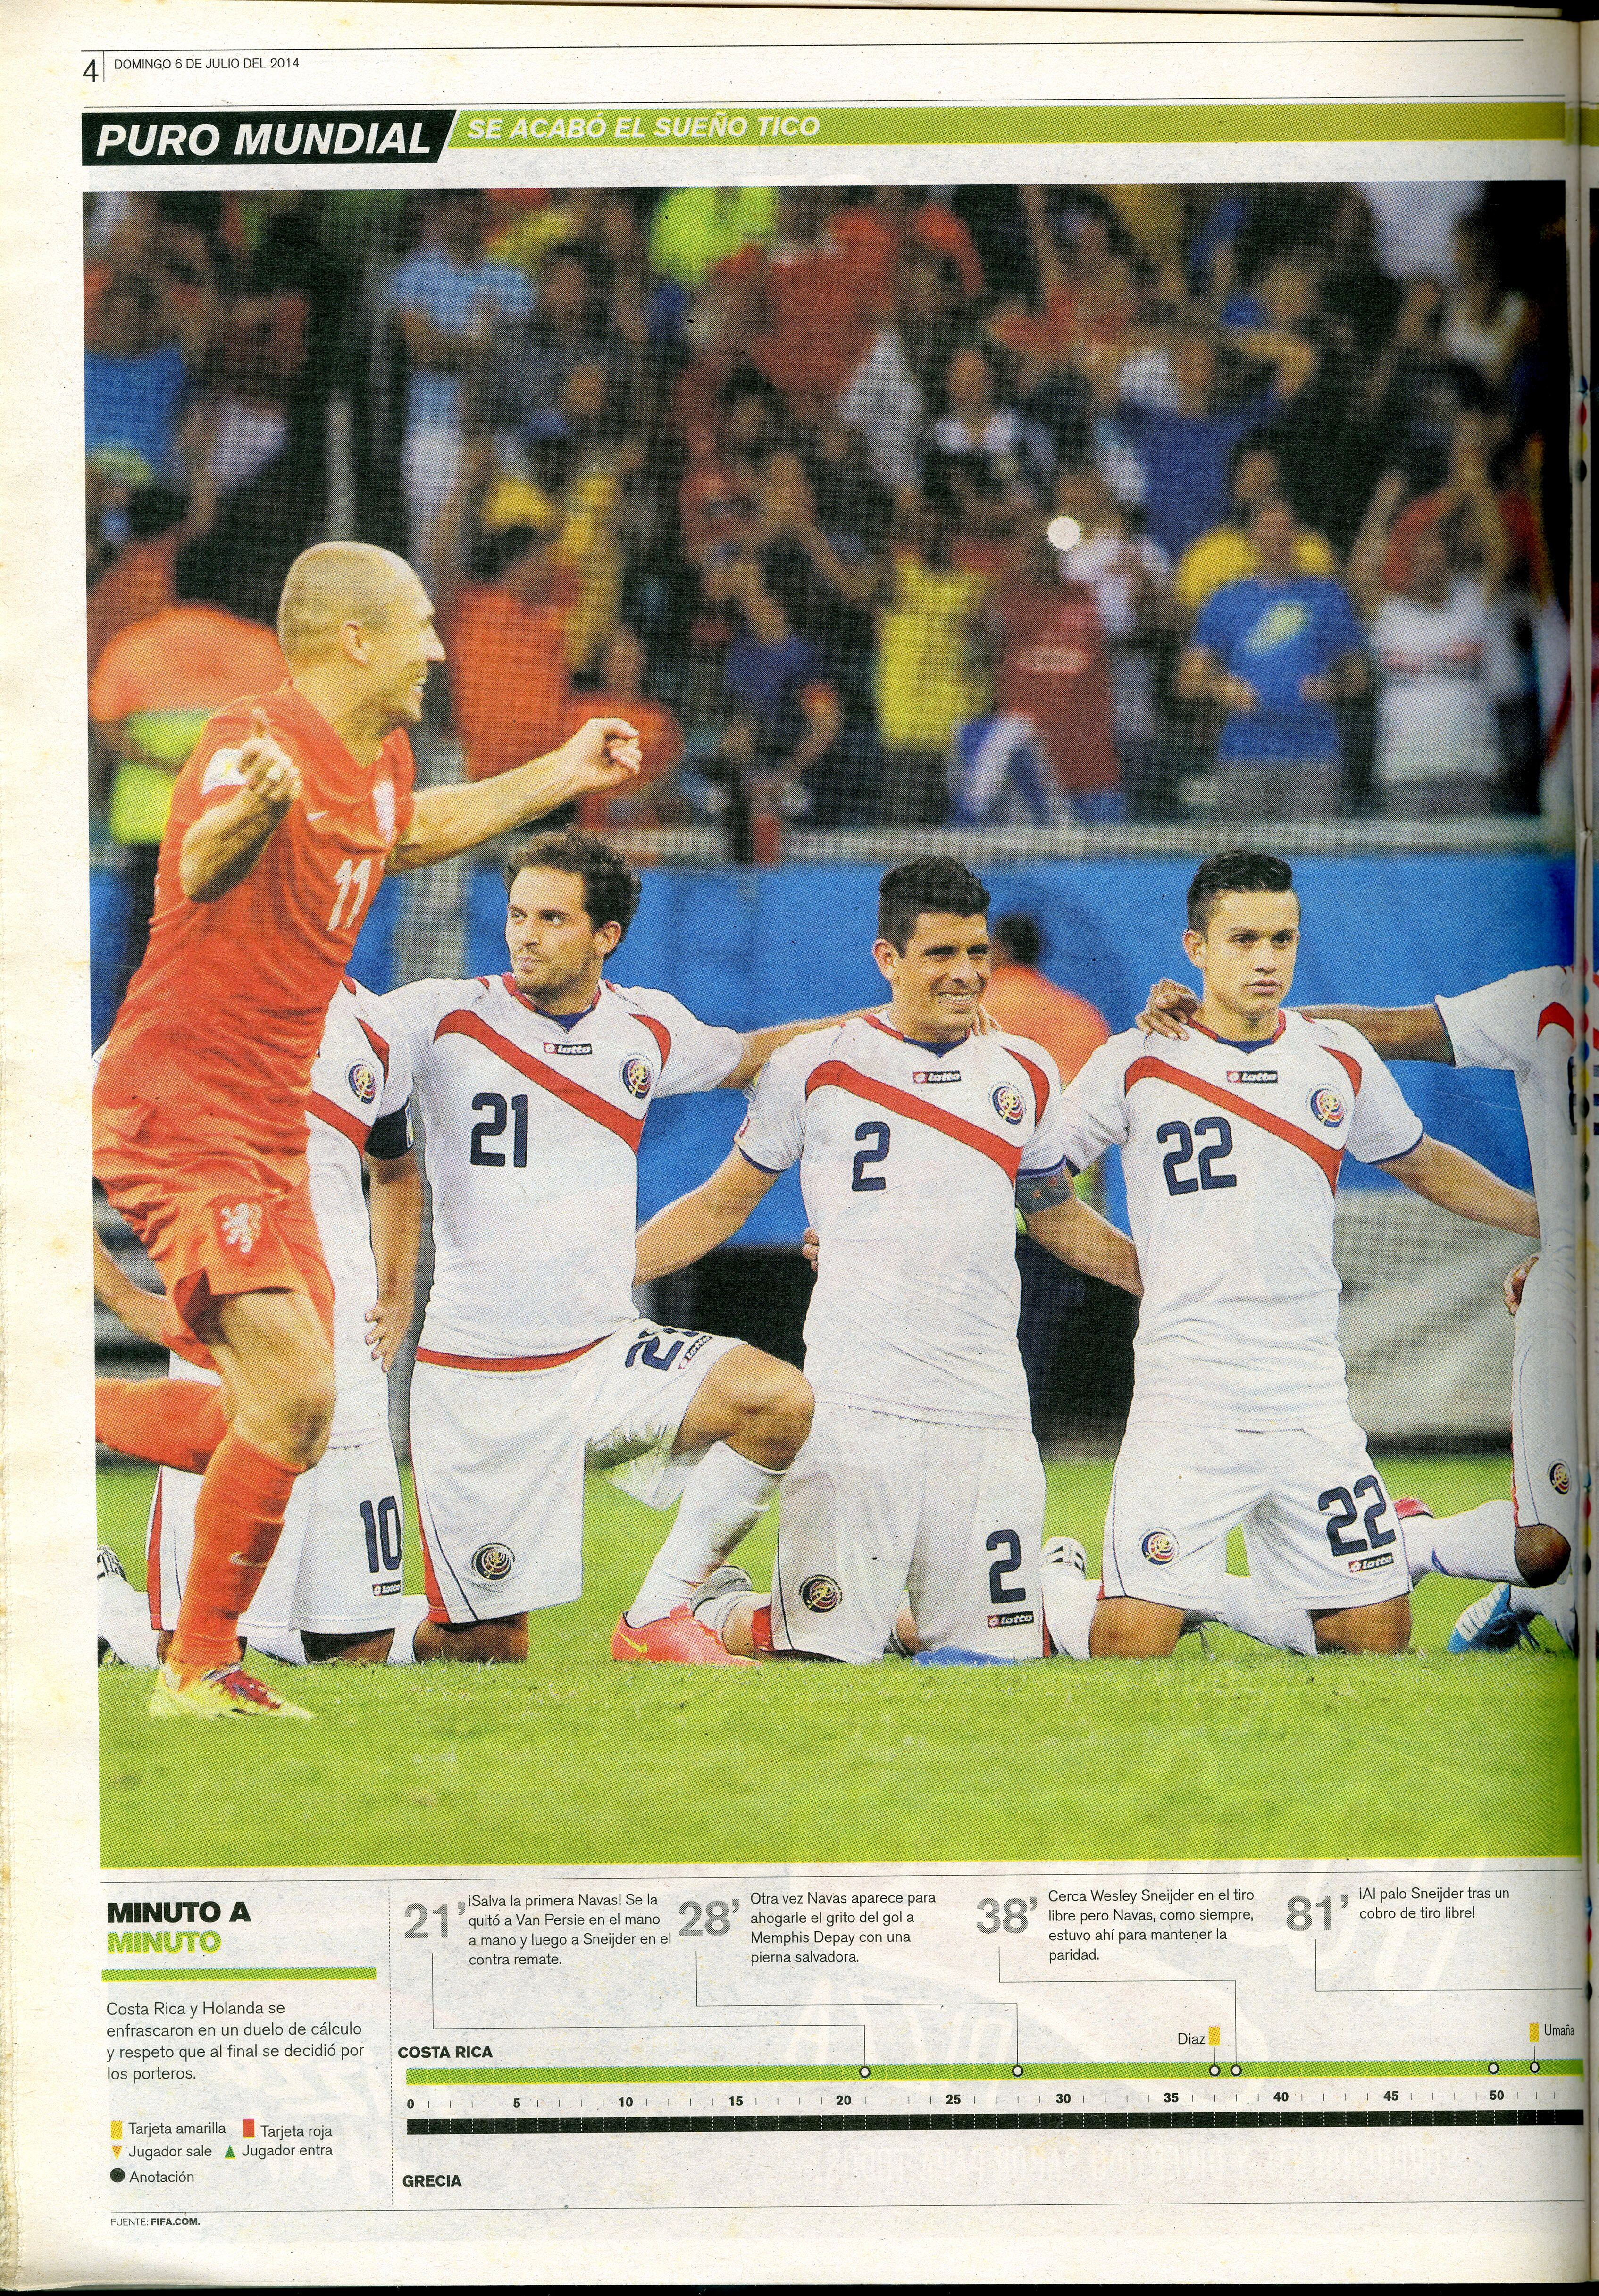 La Selección de Costa Rica hizo un Mundial brillante en Brasil 2014.
Fotografía: Archivo LN